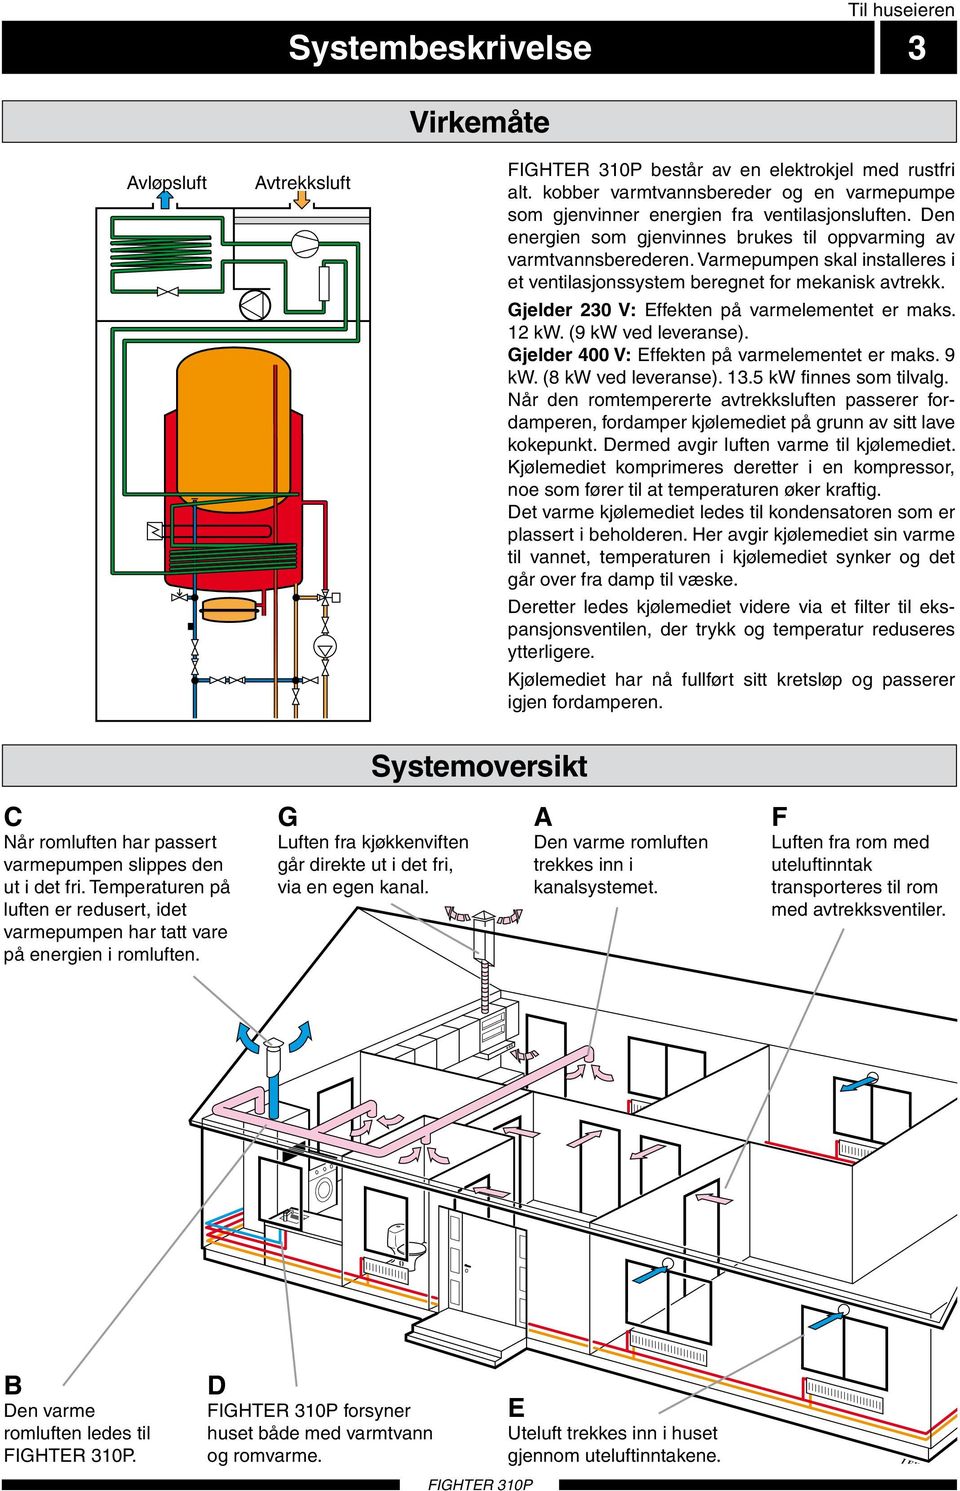 Varmepumpen skal installeres i et ventilasjonssystem beregnet for mekanisk avtrekk. Gjelder 0 V: Effekten på varmelementet er maks. kw. (9 kw ved leveranse).